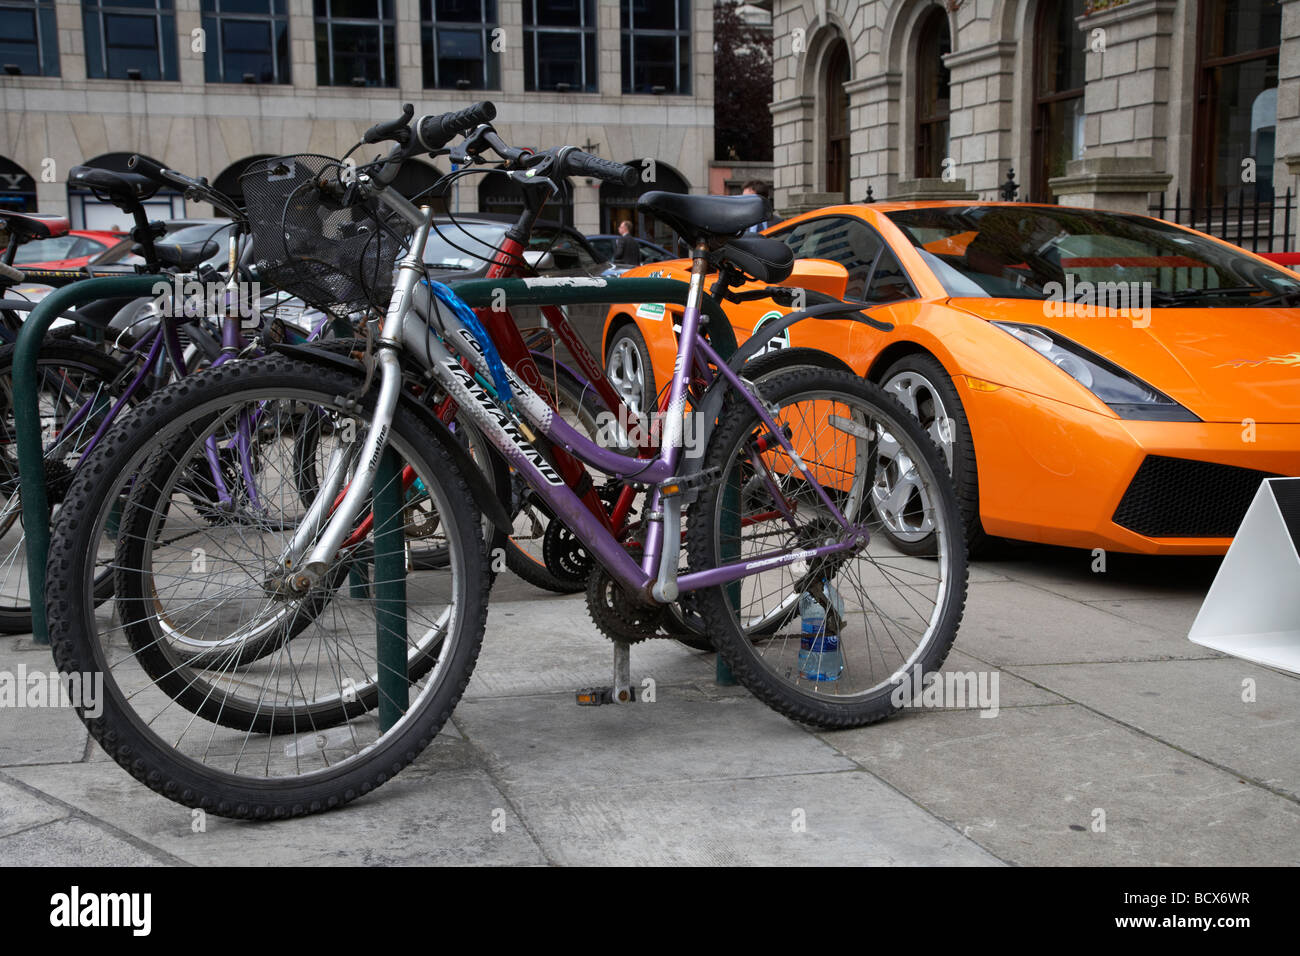 Lamborghini Sportwagen auf Bürgersteig neben Zeile der Fahrräder geparkt Dublin Republik von Irland, die Kluft zwischen Arm und Reich und soziale Ungleichheit Stockfoto